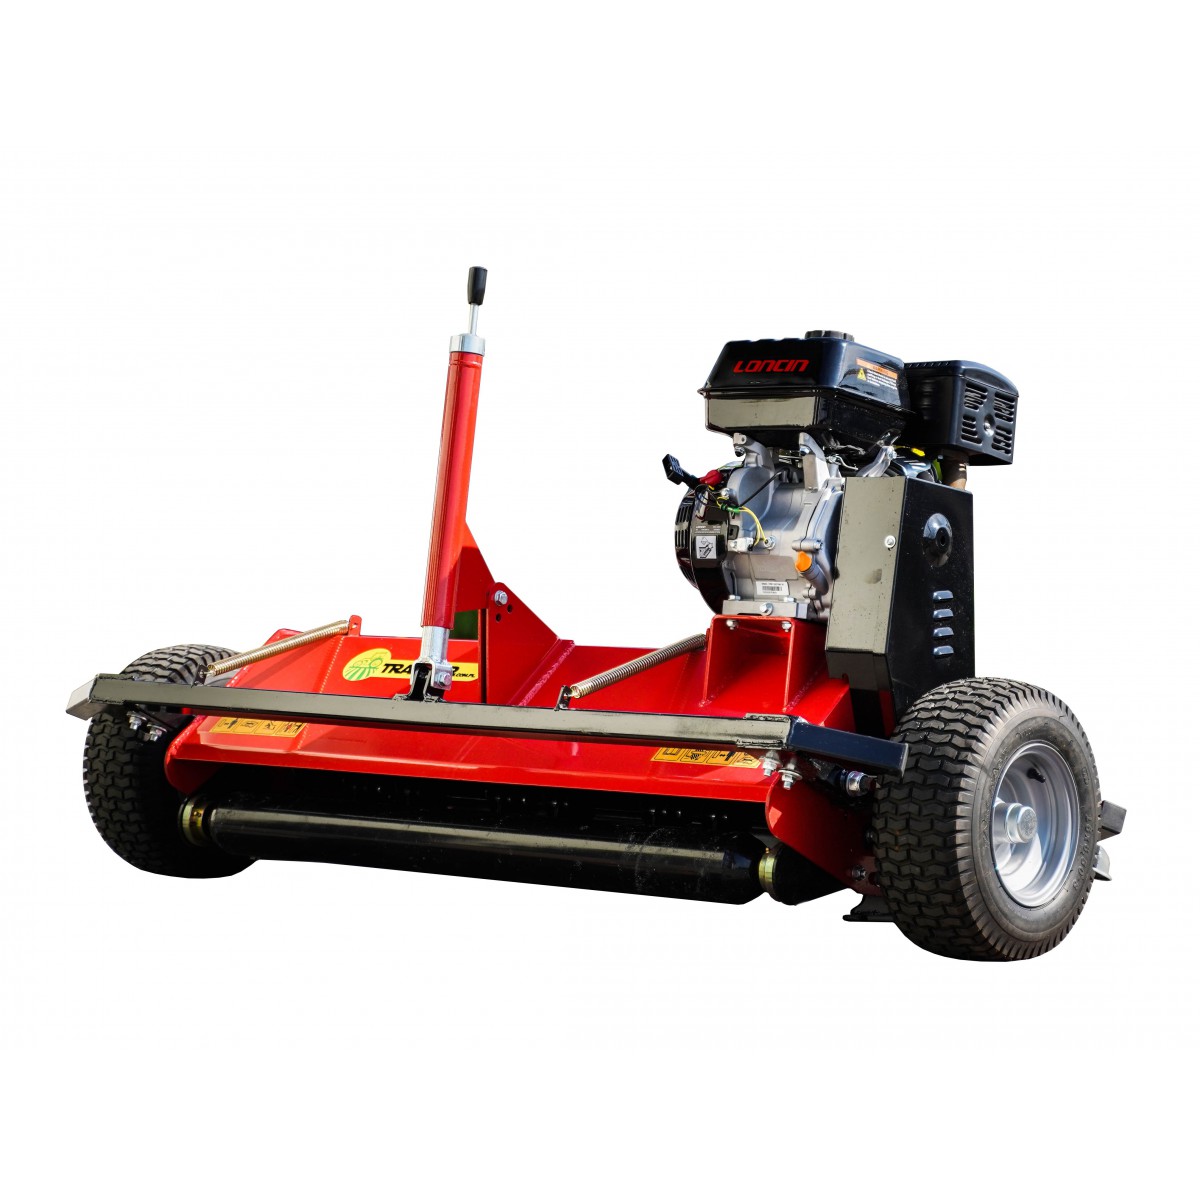 Flail mower ATVM 120, for ATV QUAD - Loncin engine